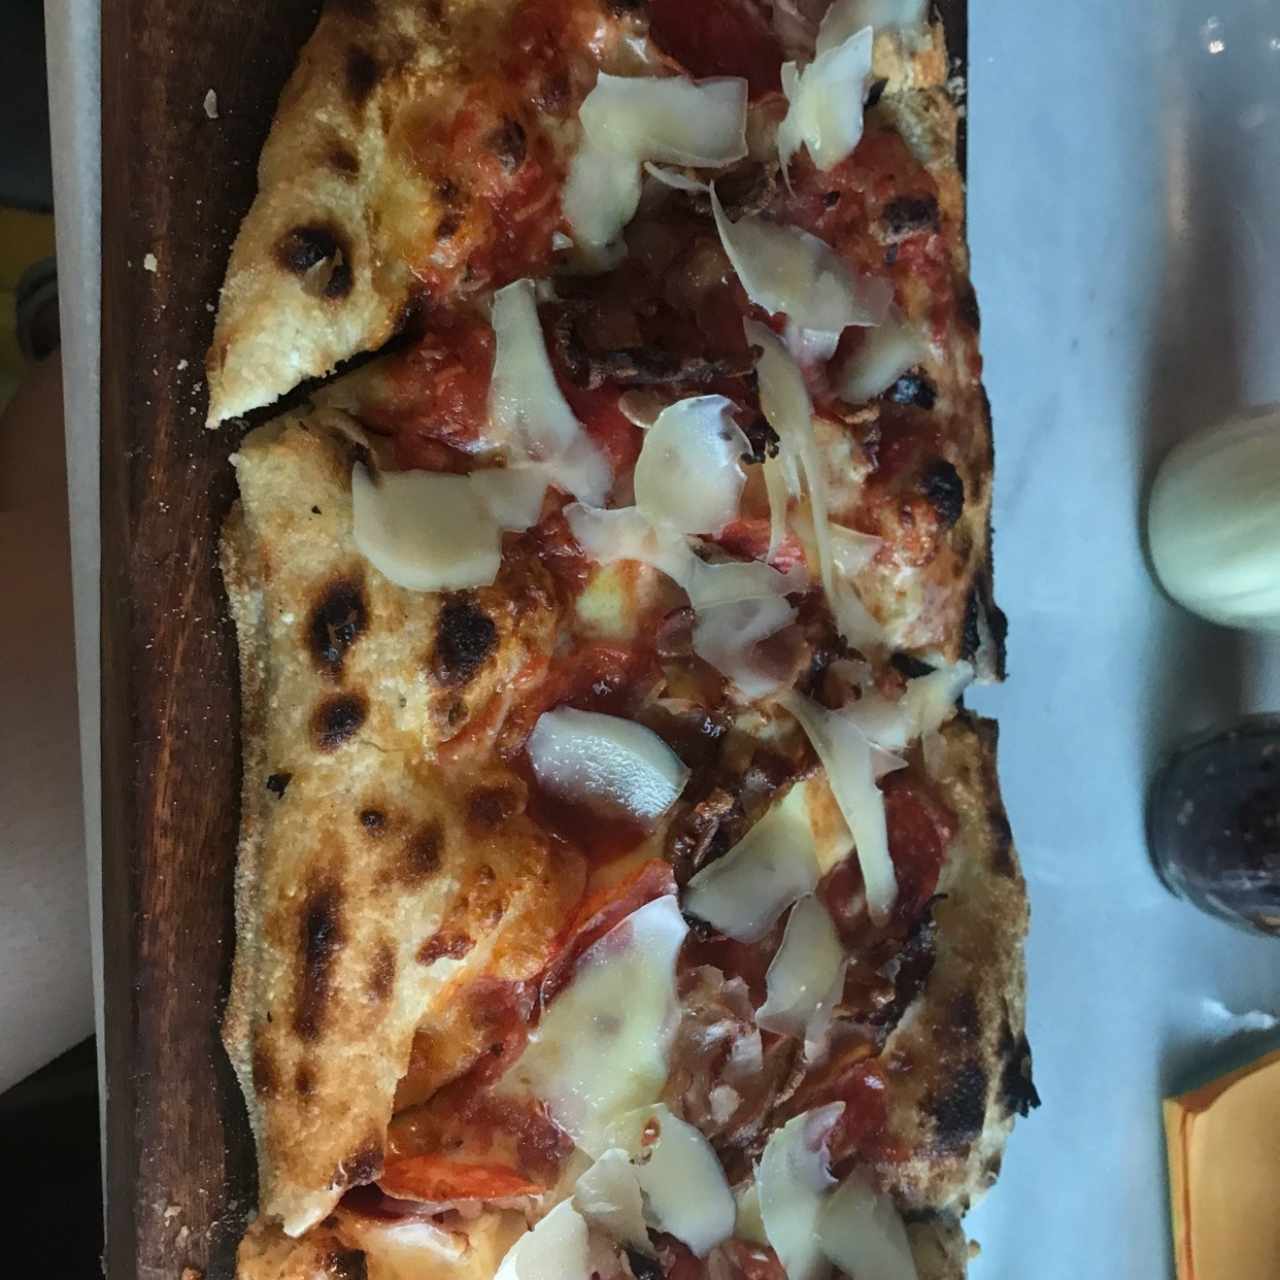 pizza pequeña italia